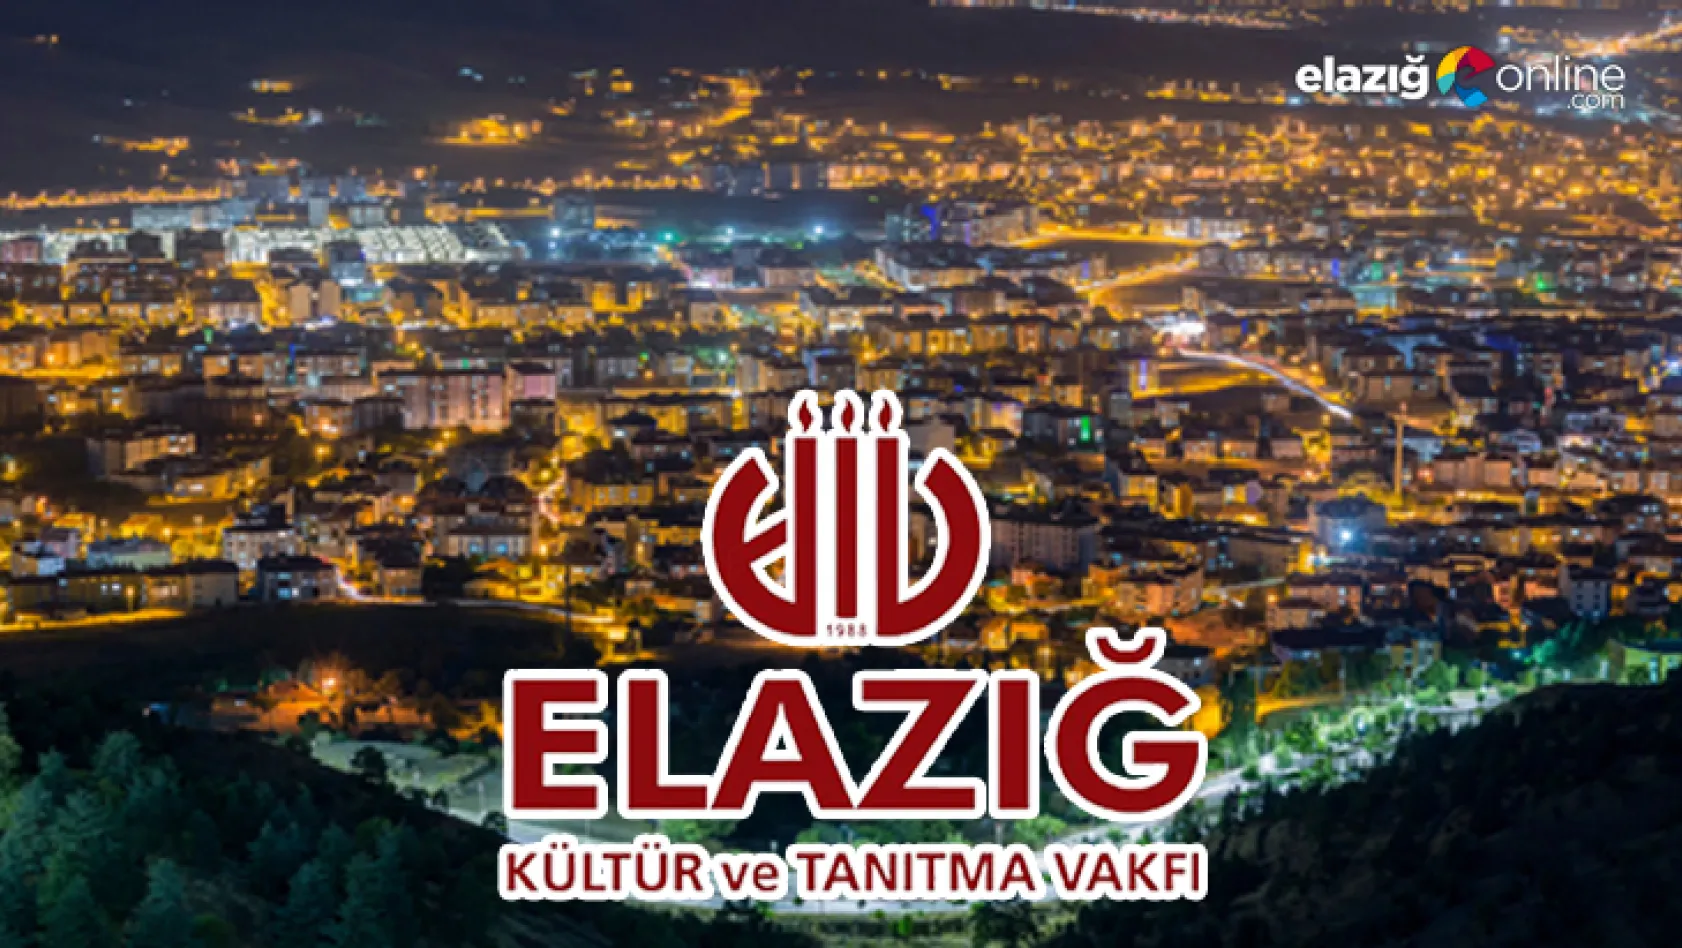 Elazığ Vakfı, Elazığ'ın Sağlık Turizmindeki Potansiyelini Yazdı